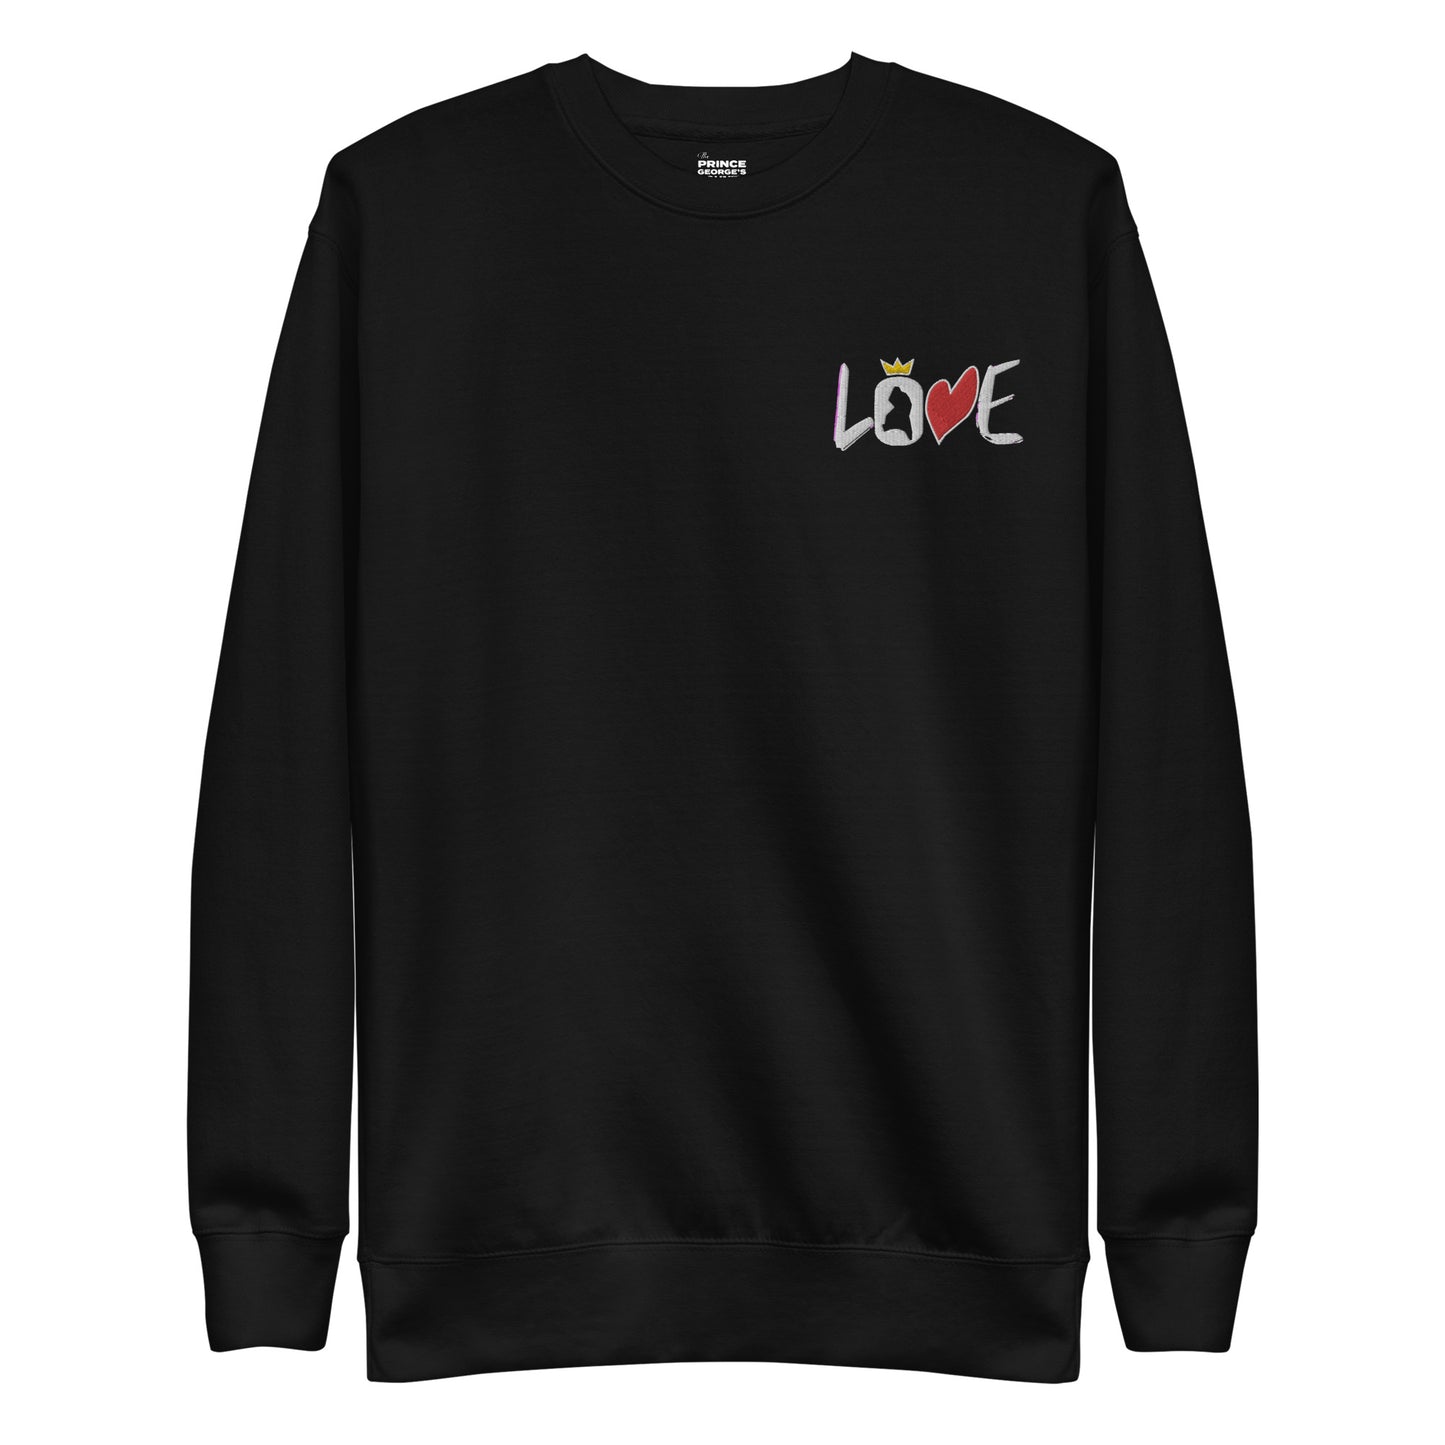 LOVE Stitched Pocket Unisex Premium Sweatshirt